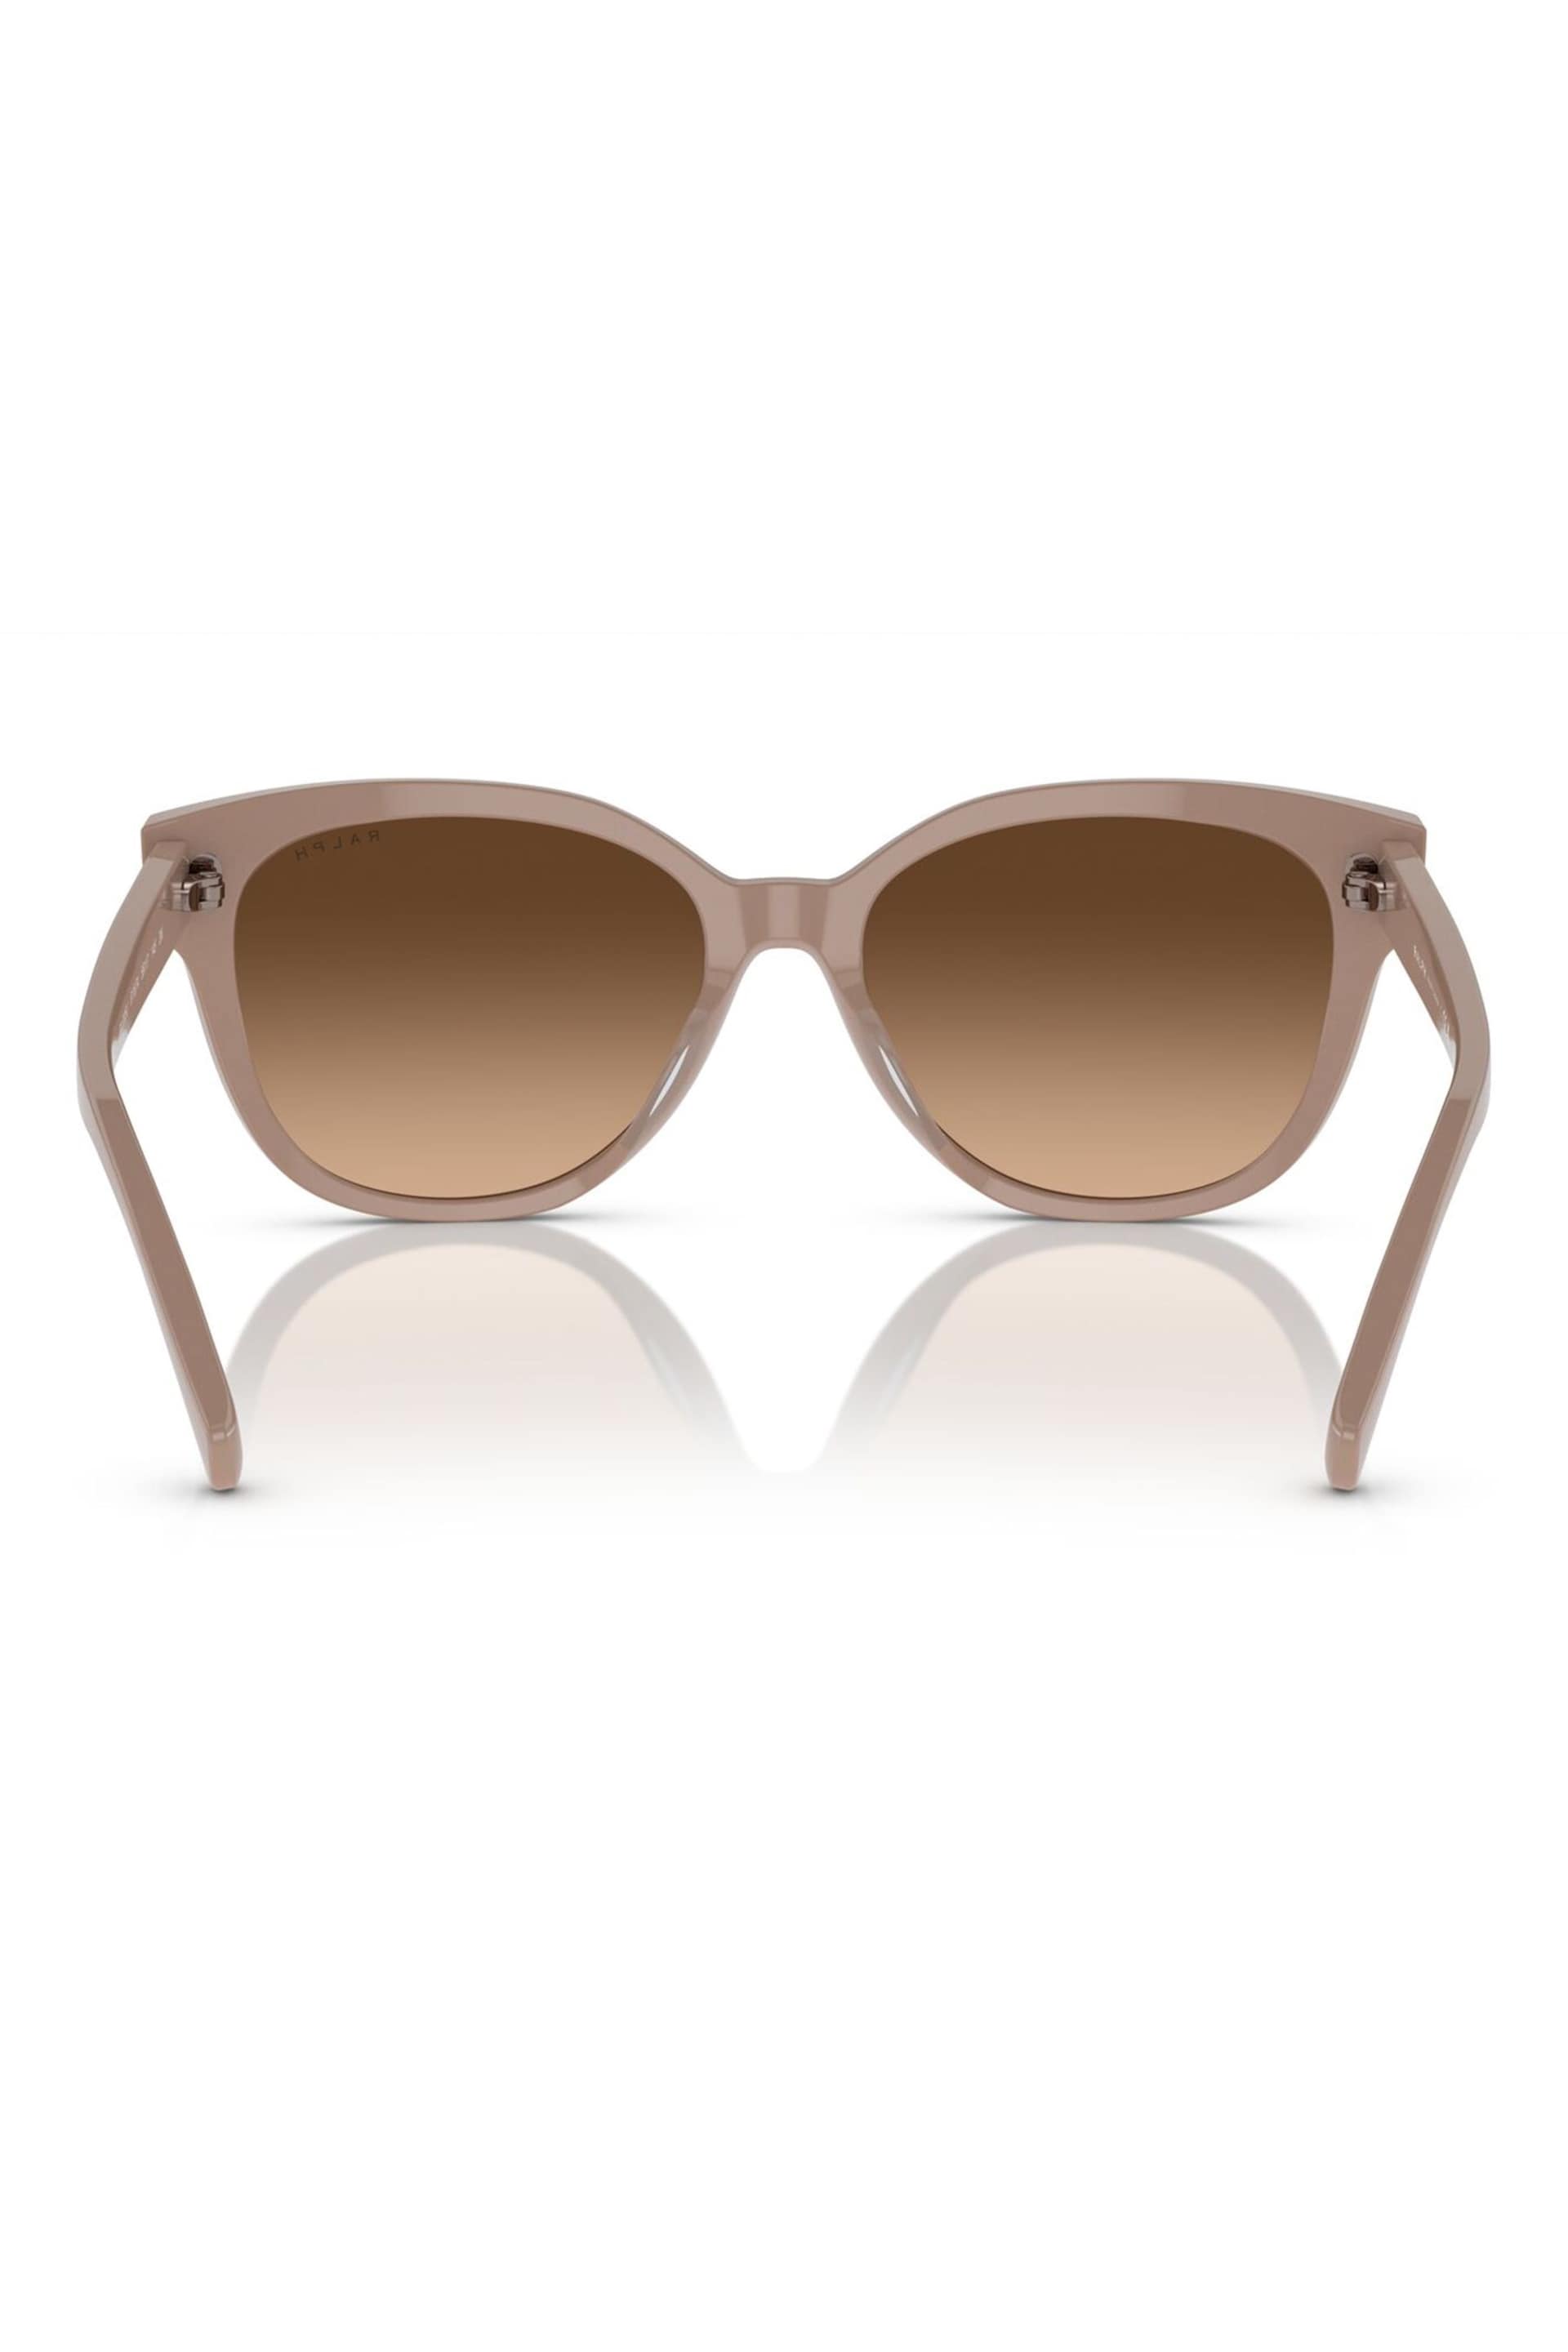 Emporio Armani EA2033 Brown Sunglasses - Image 2 of 5